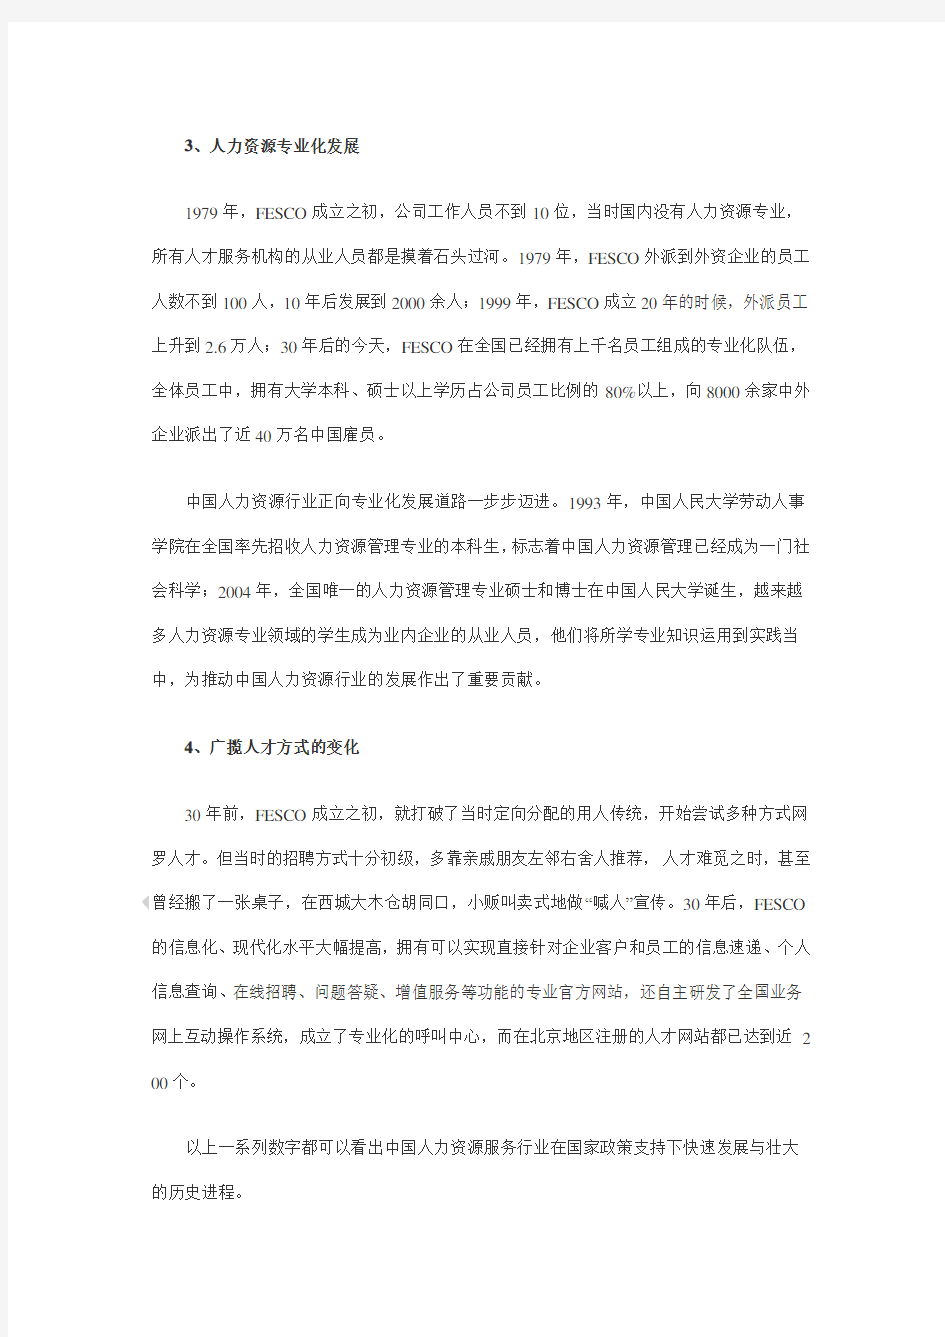 中国人力资源服务行业 发展报告 